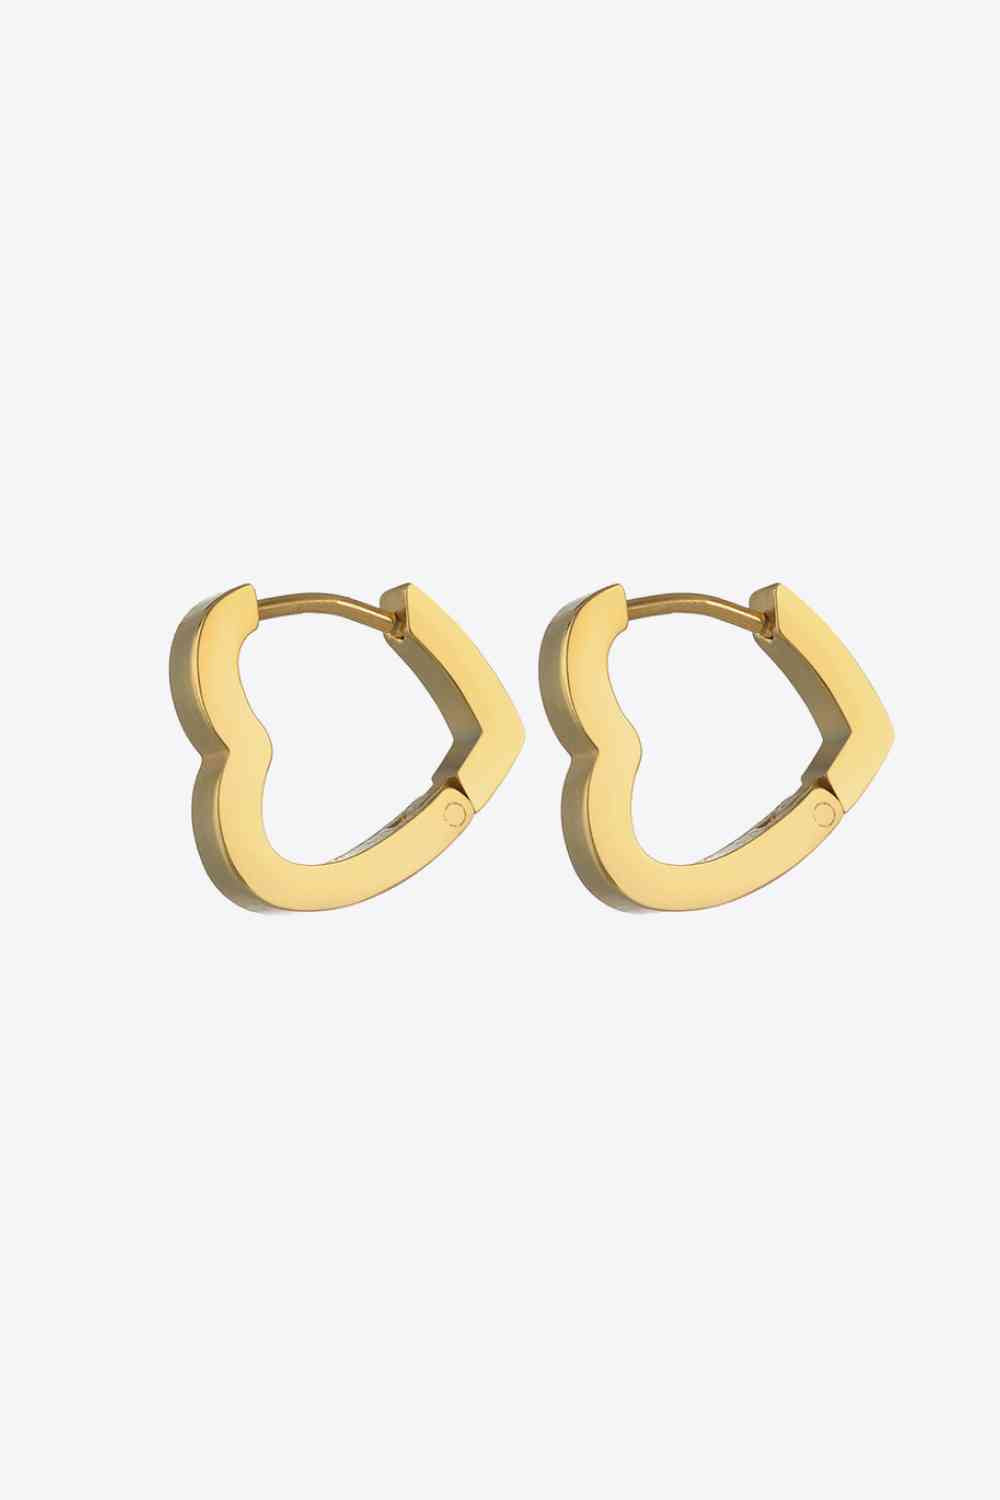 Heart shape huggies earrings in Gold. Stainless steel. 